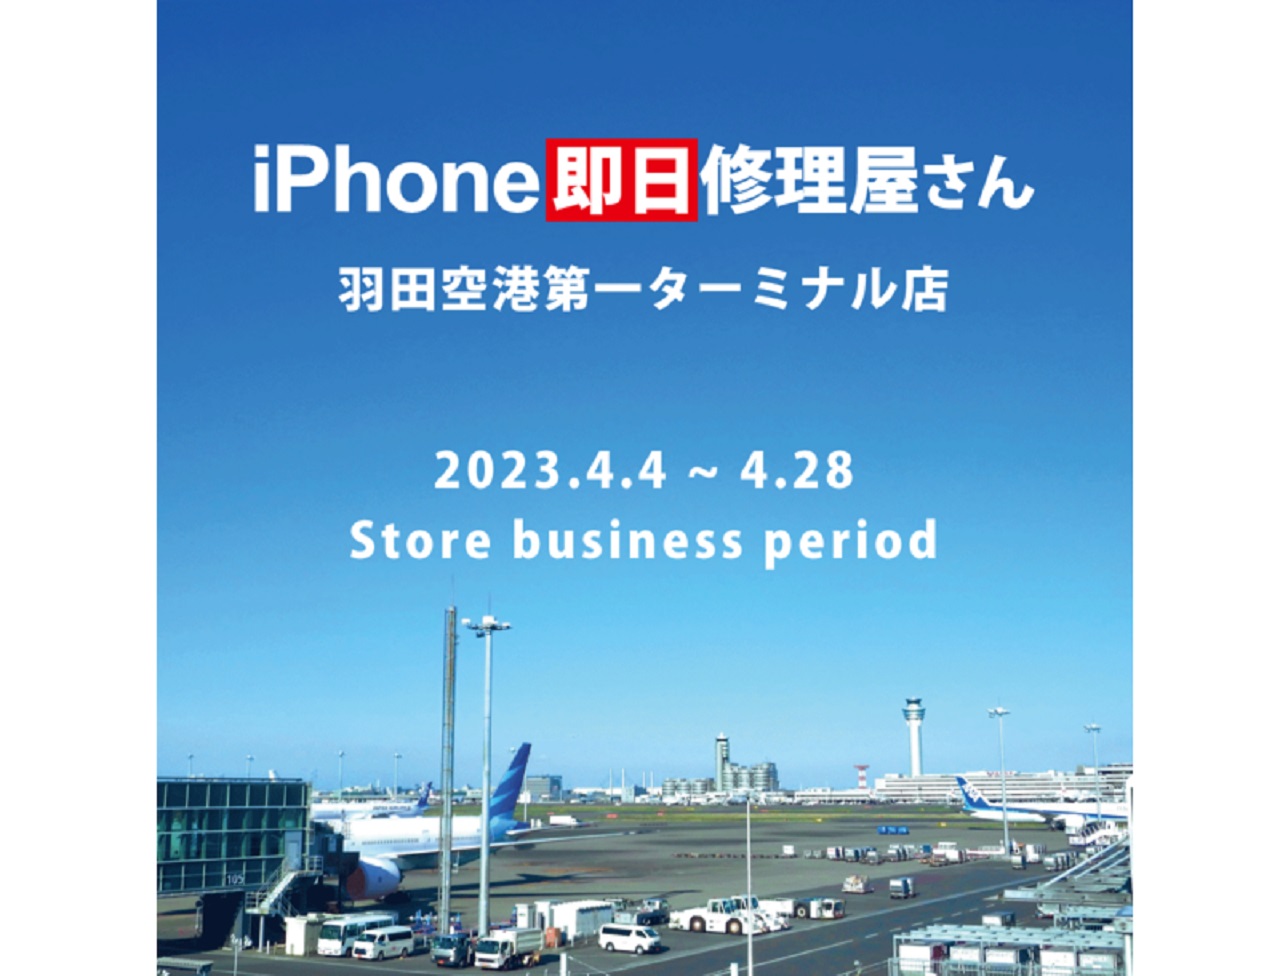 羽田空港のiPhone修理屋さん